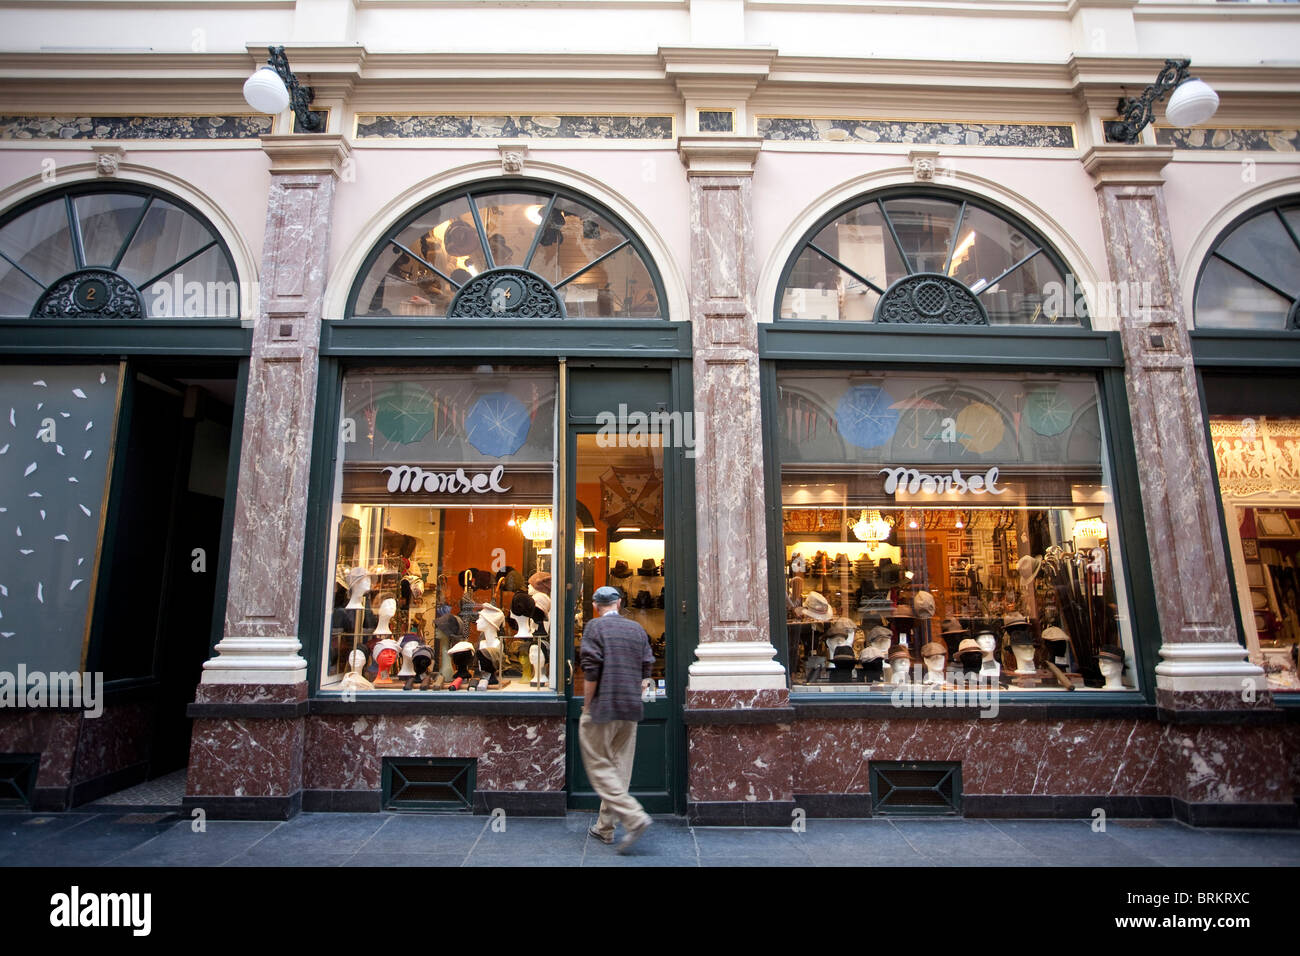 Monsel chapeaux boutique Galeries Royales St Hubert Bruxelles Belgique.  Photo:Jeff Gilbert Photo Stock - Alamy